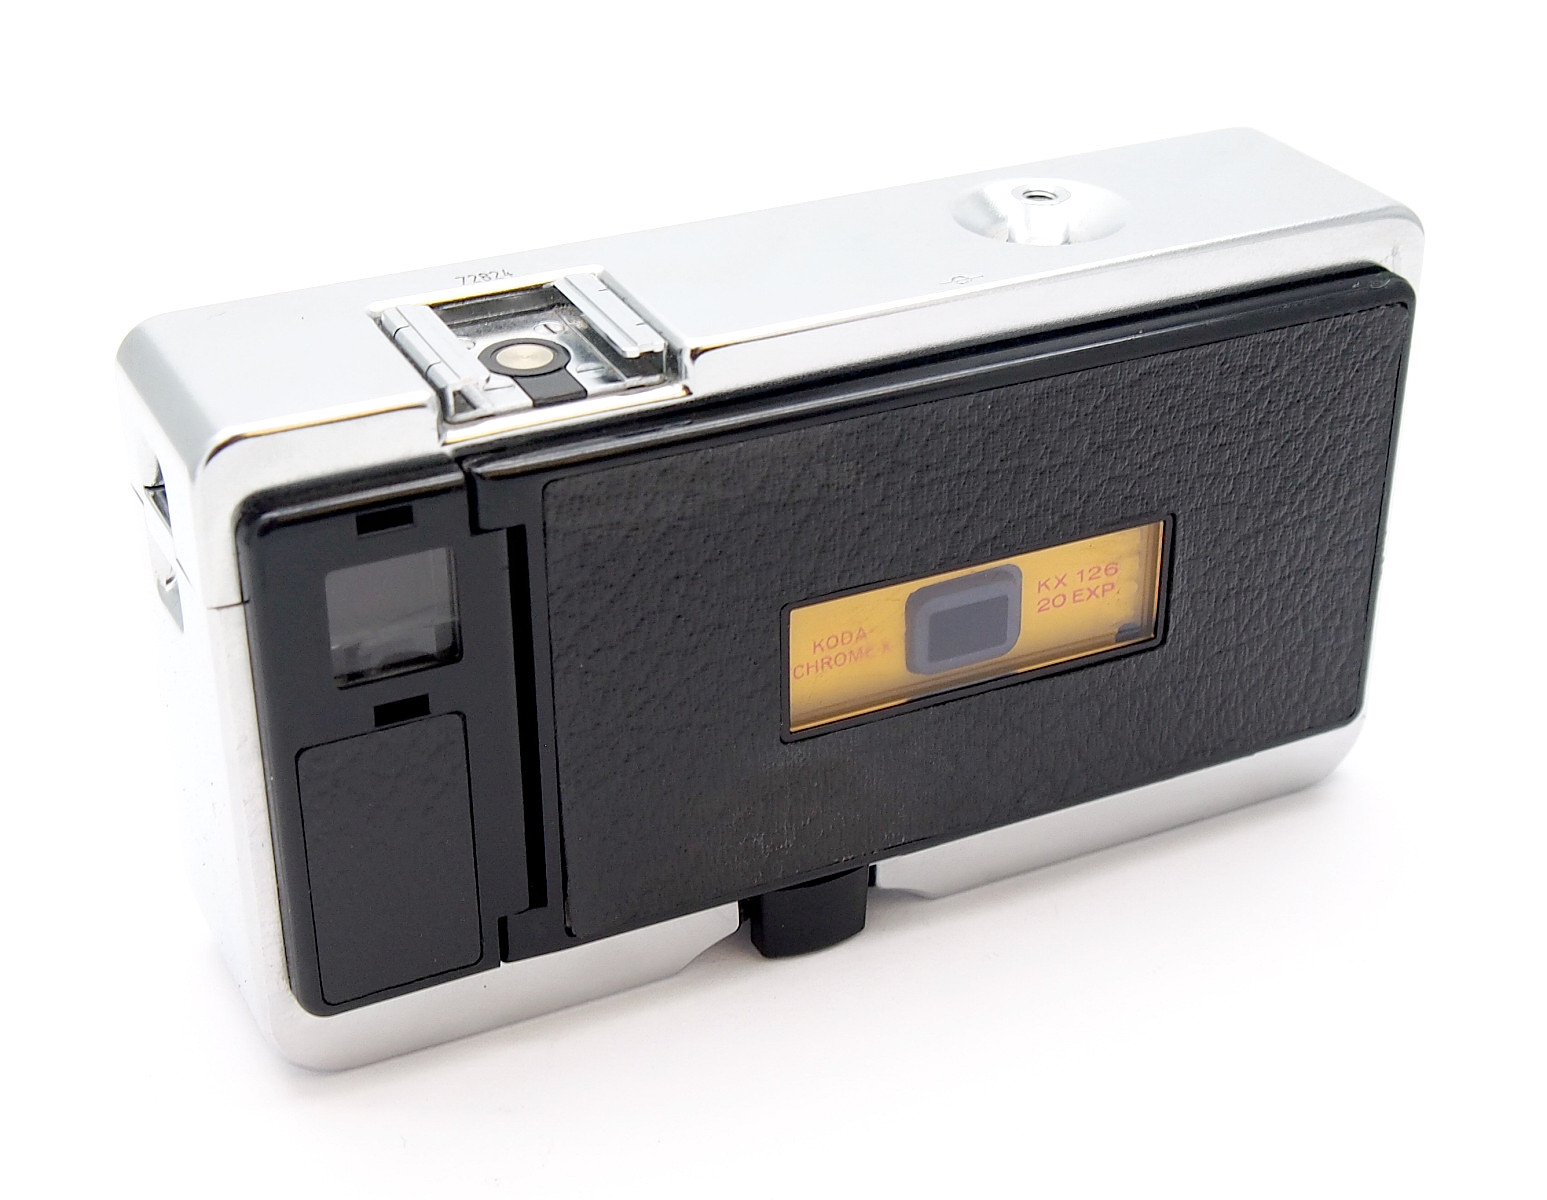 Kodak Instamatic 500 126 Camera with Xenar Lens #8815